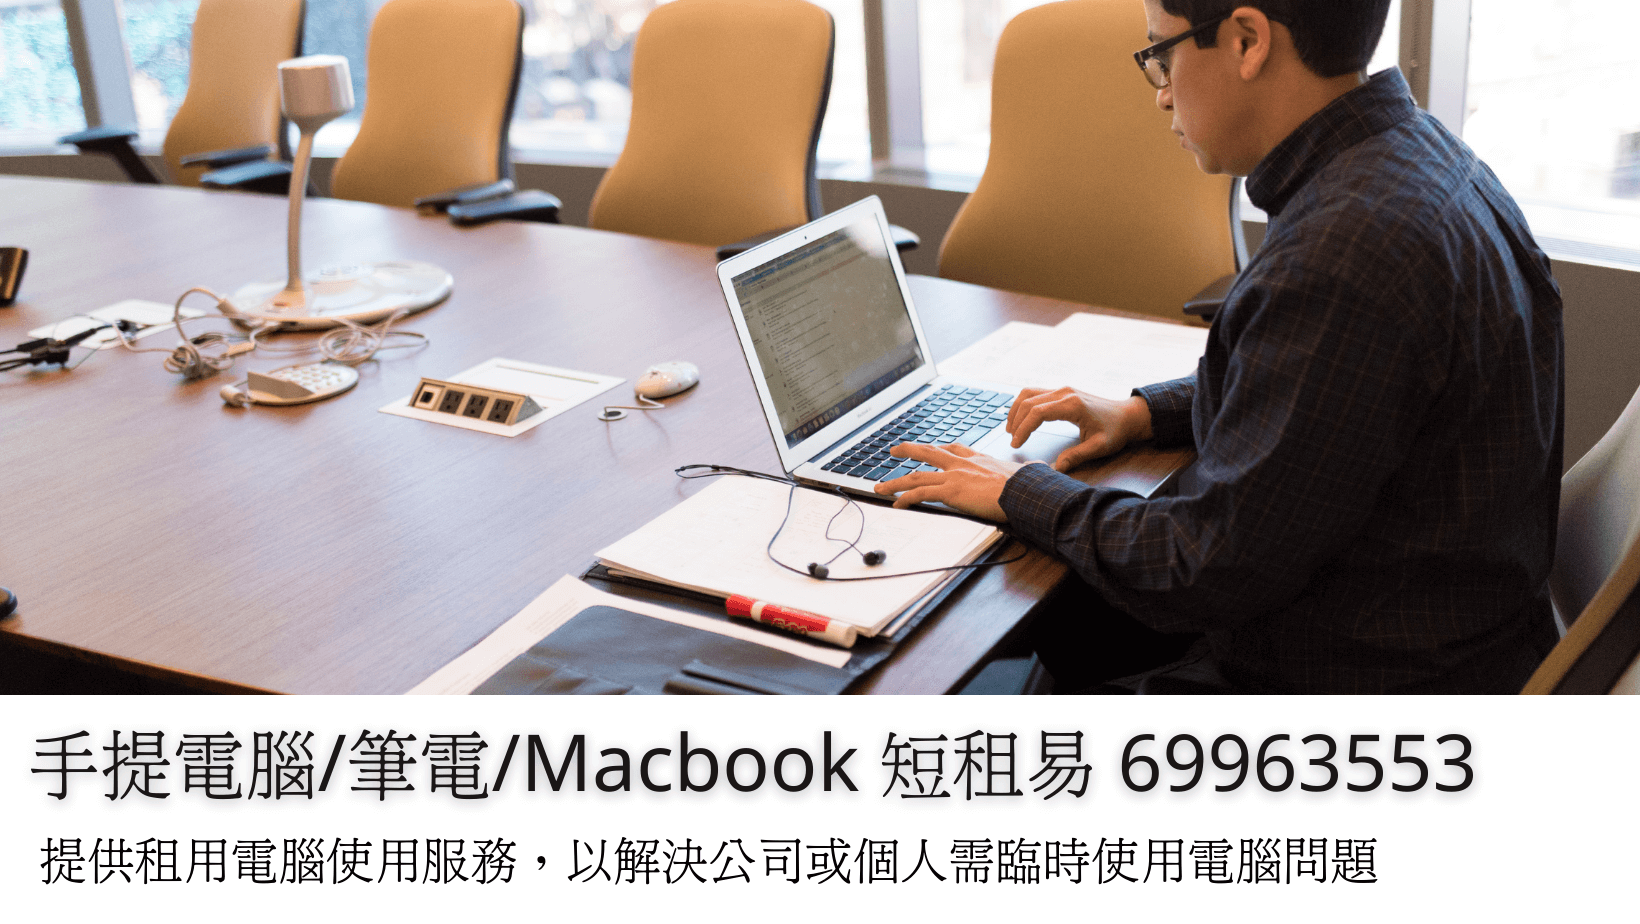 手提電腦/筆電/Macbook 短租易 69963553​